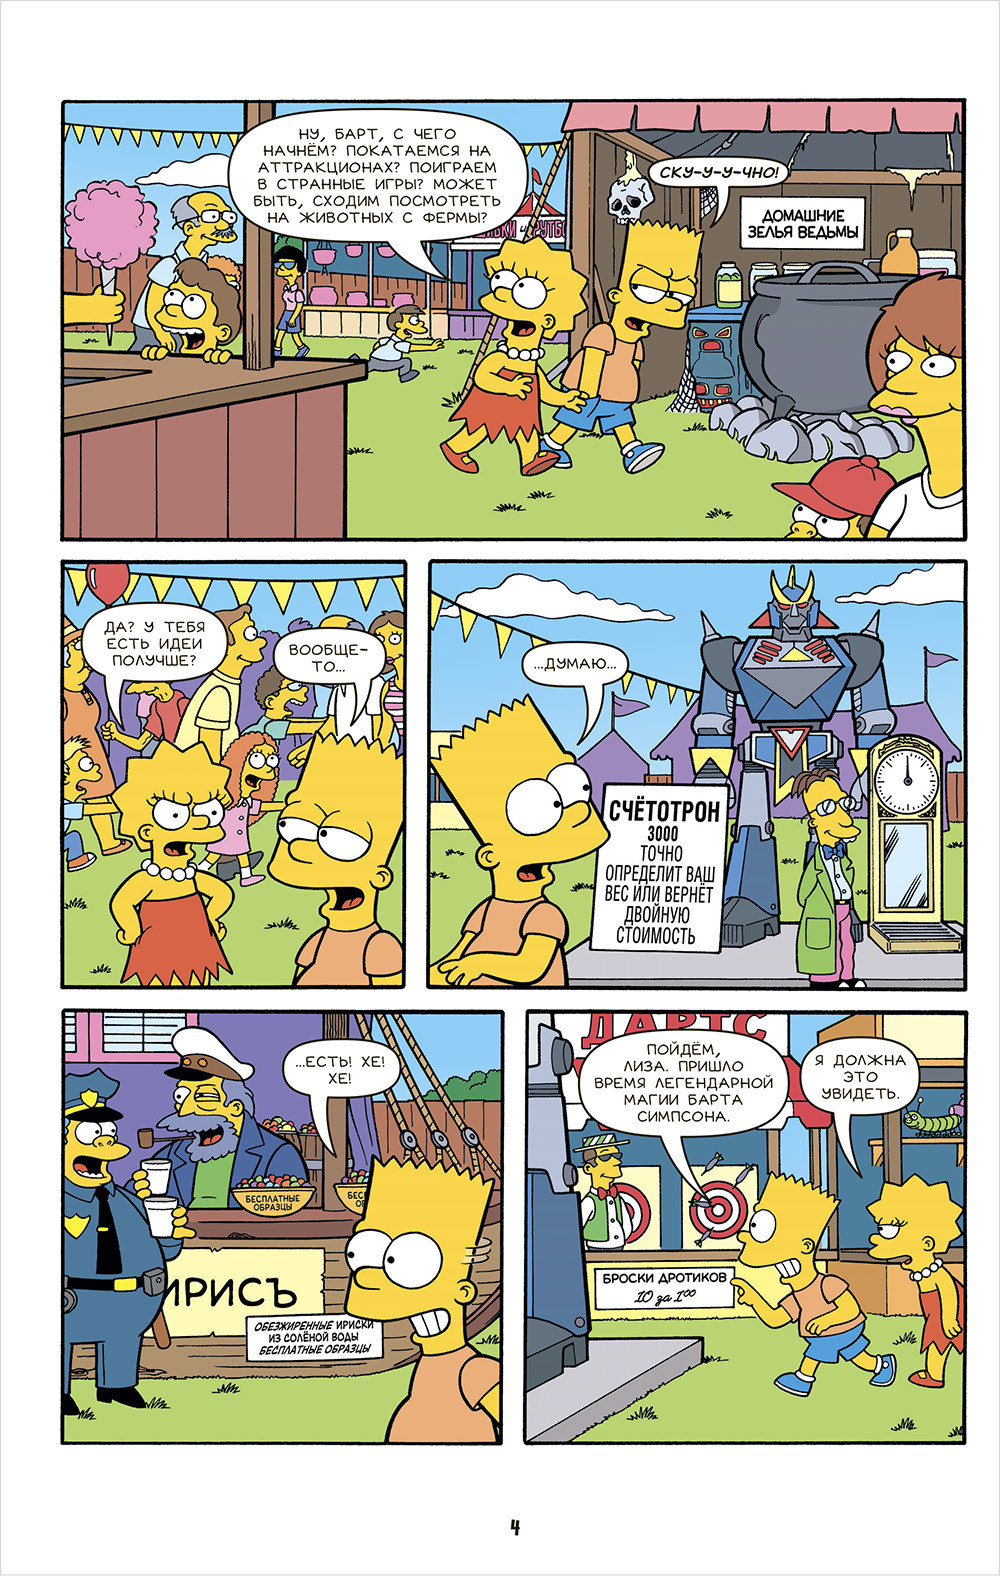  Simpsons: .  1